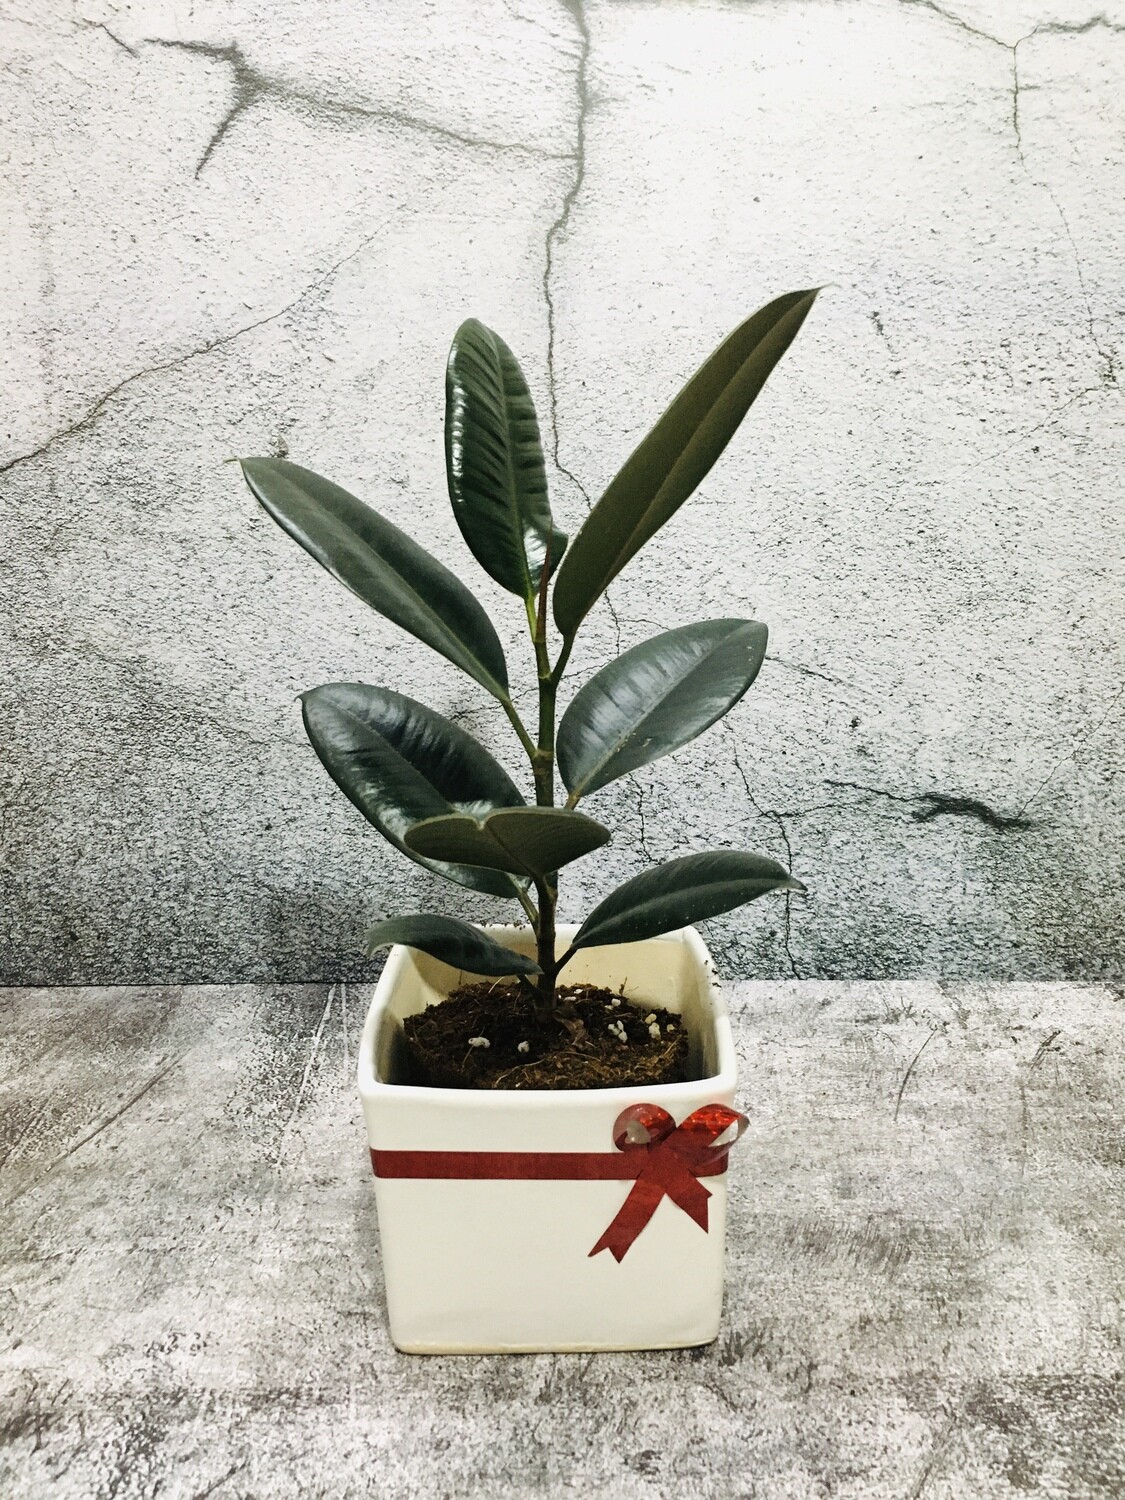 Ficus Elastica - Rubber Plant Black in 5 inches White Square Pot